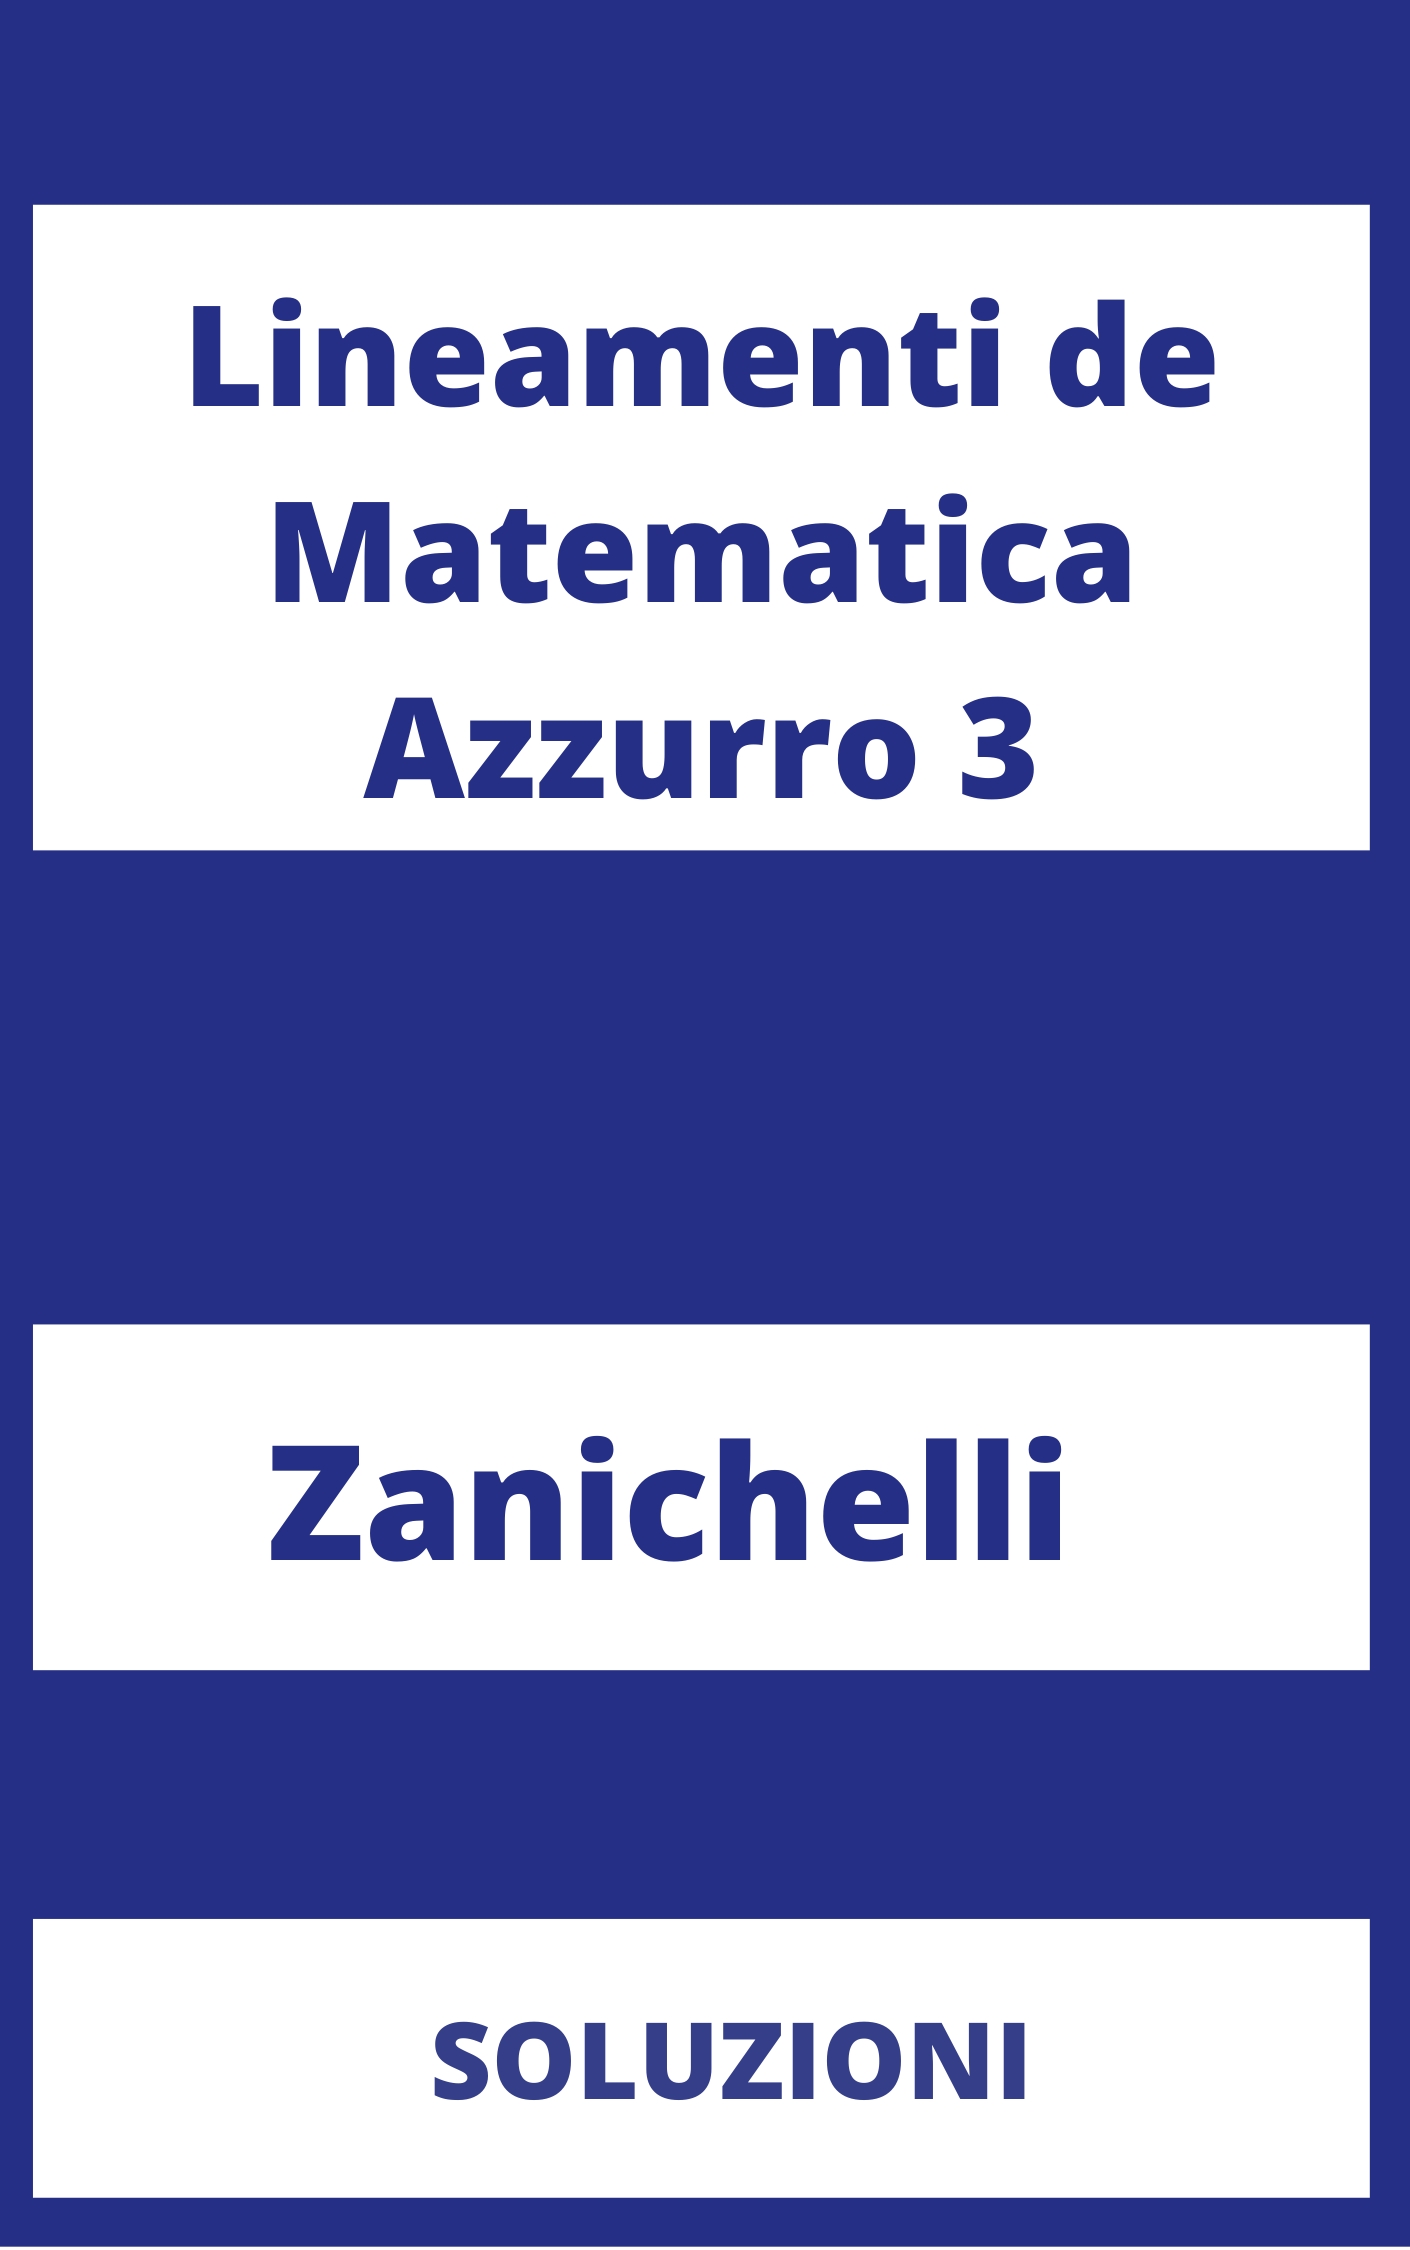 Lineamenti de Matematica Azzurro 3